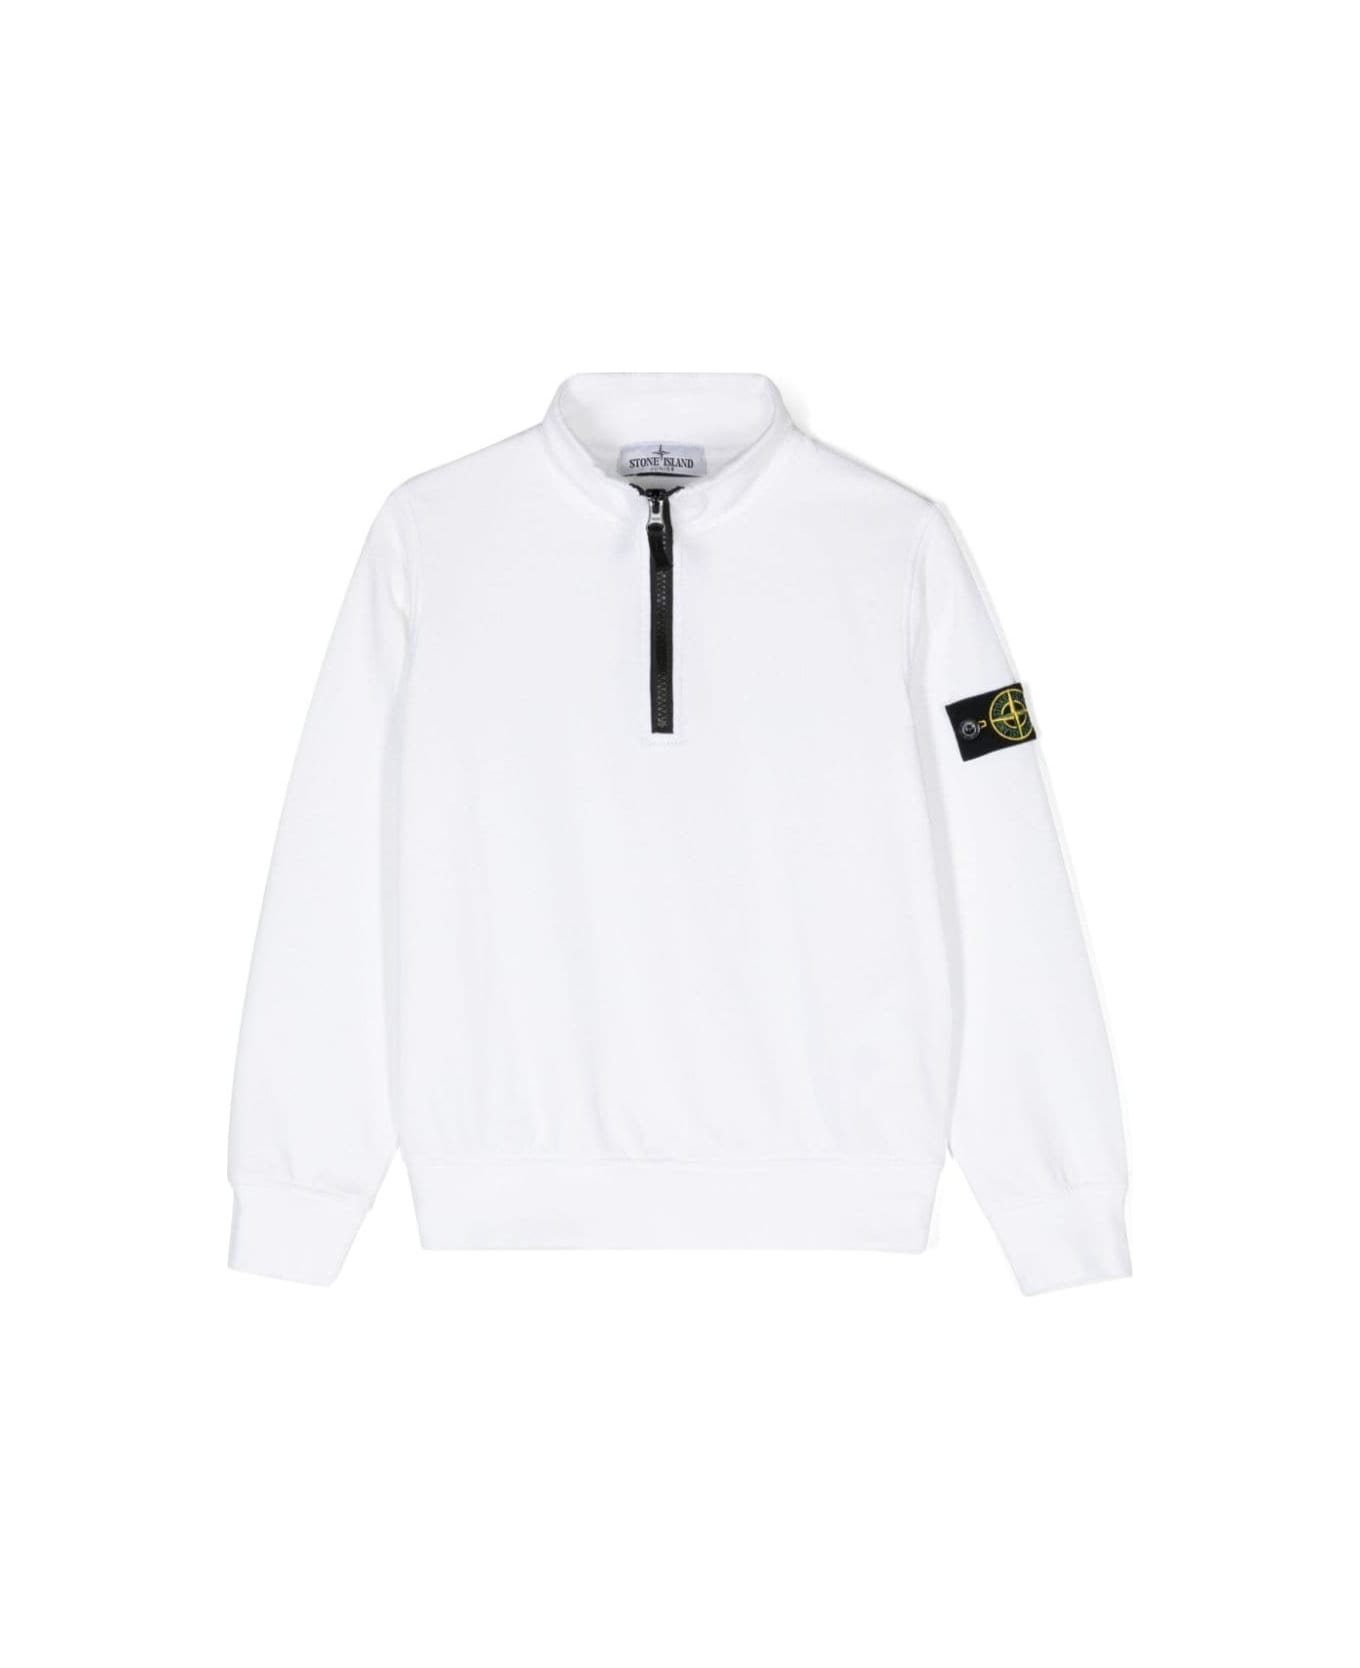 Stone Island Junior White Sweatshirt With Zip In Cotton Boy - White